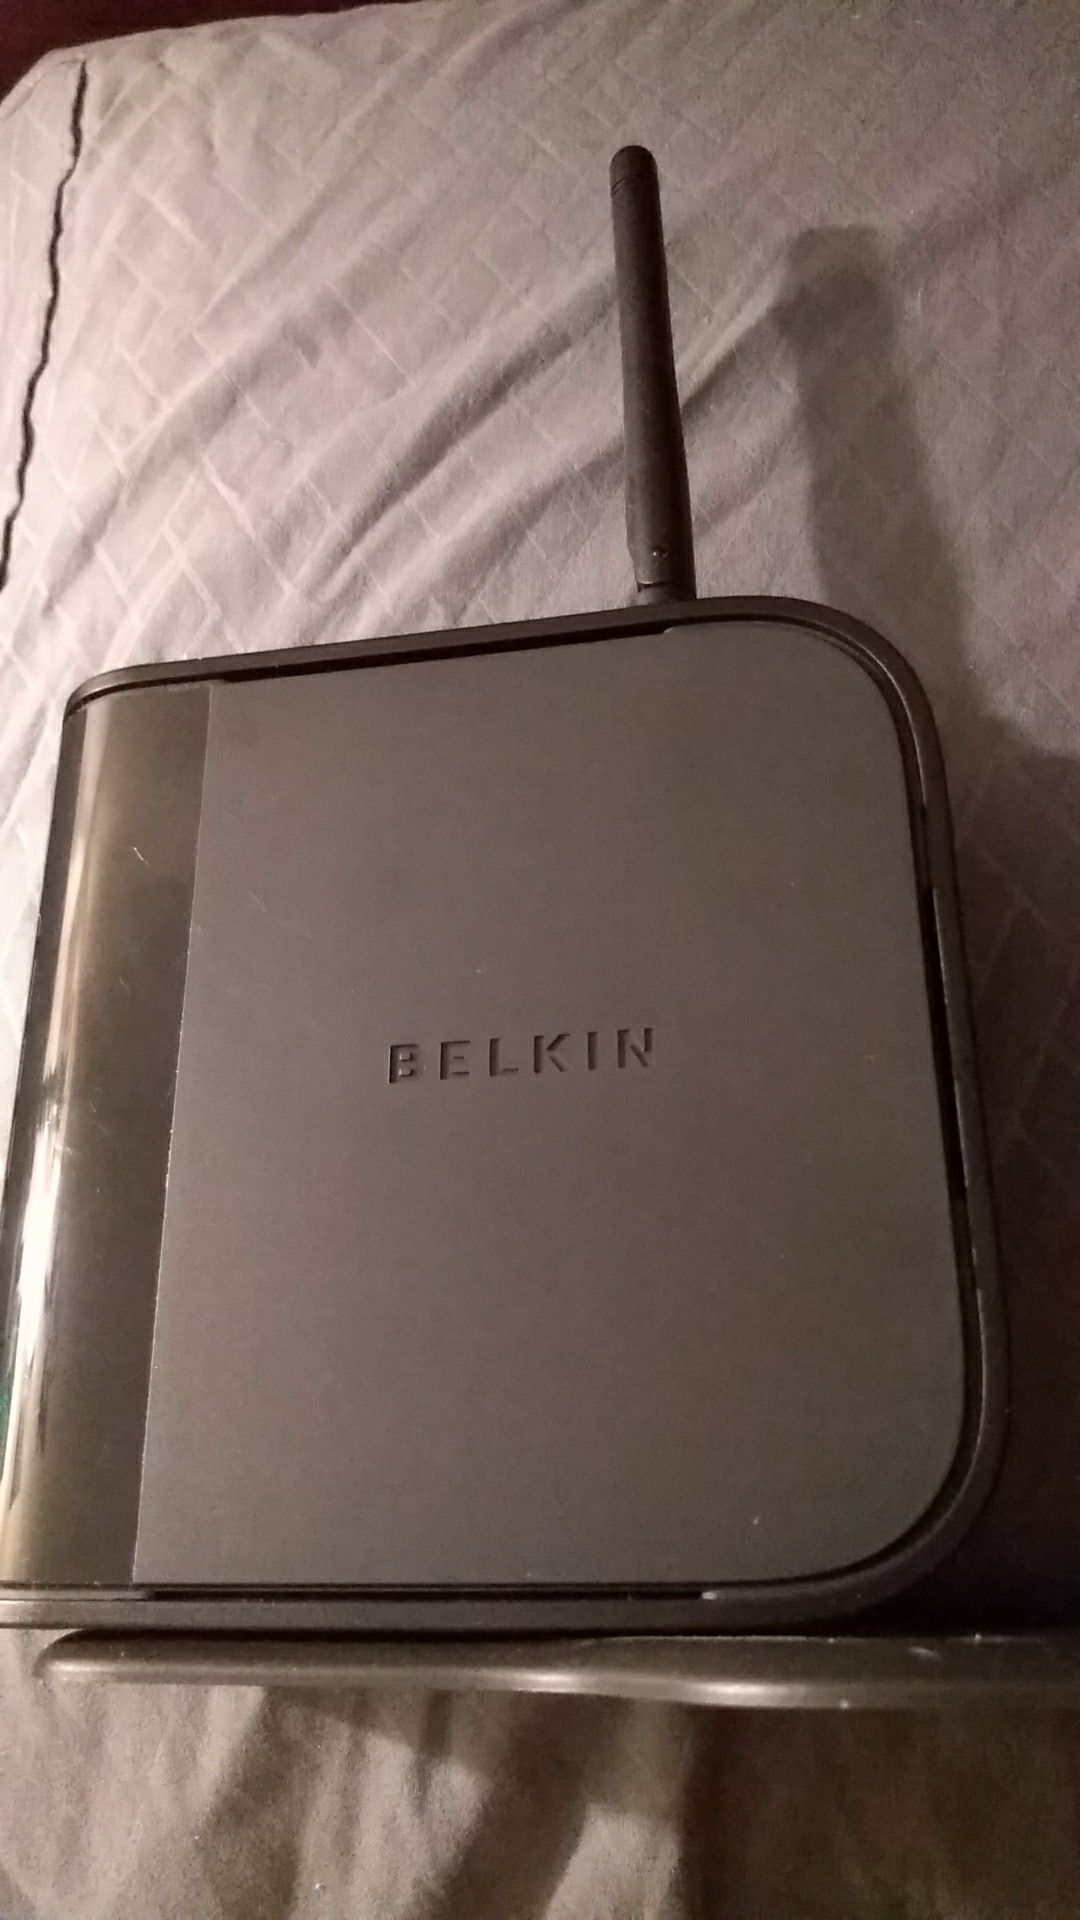 Belkin Wireless Router F5D7234-4